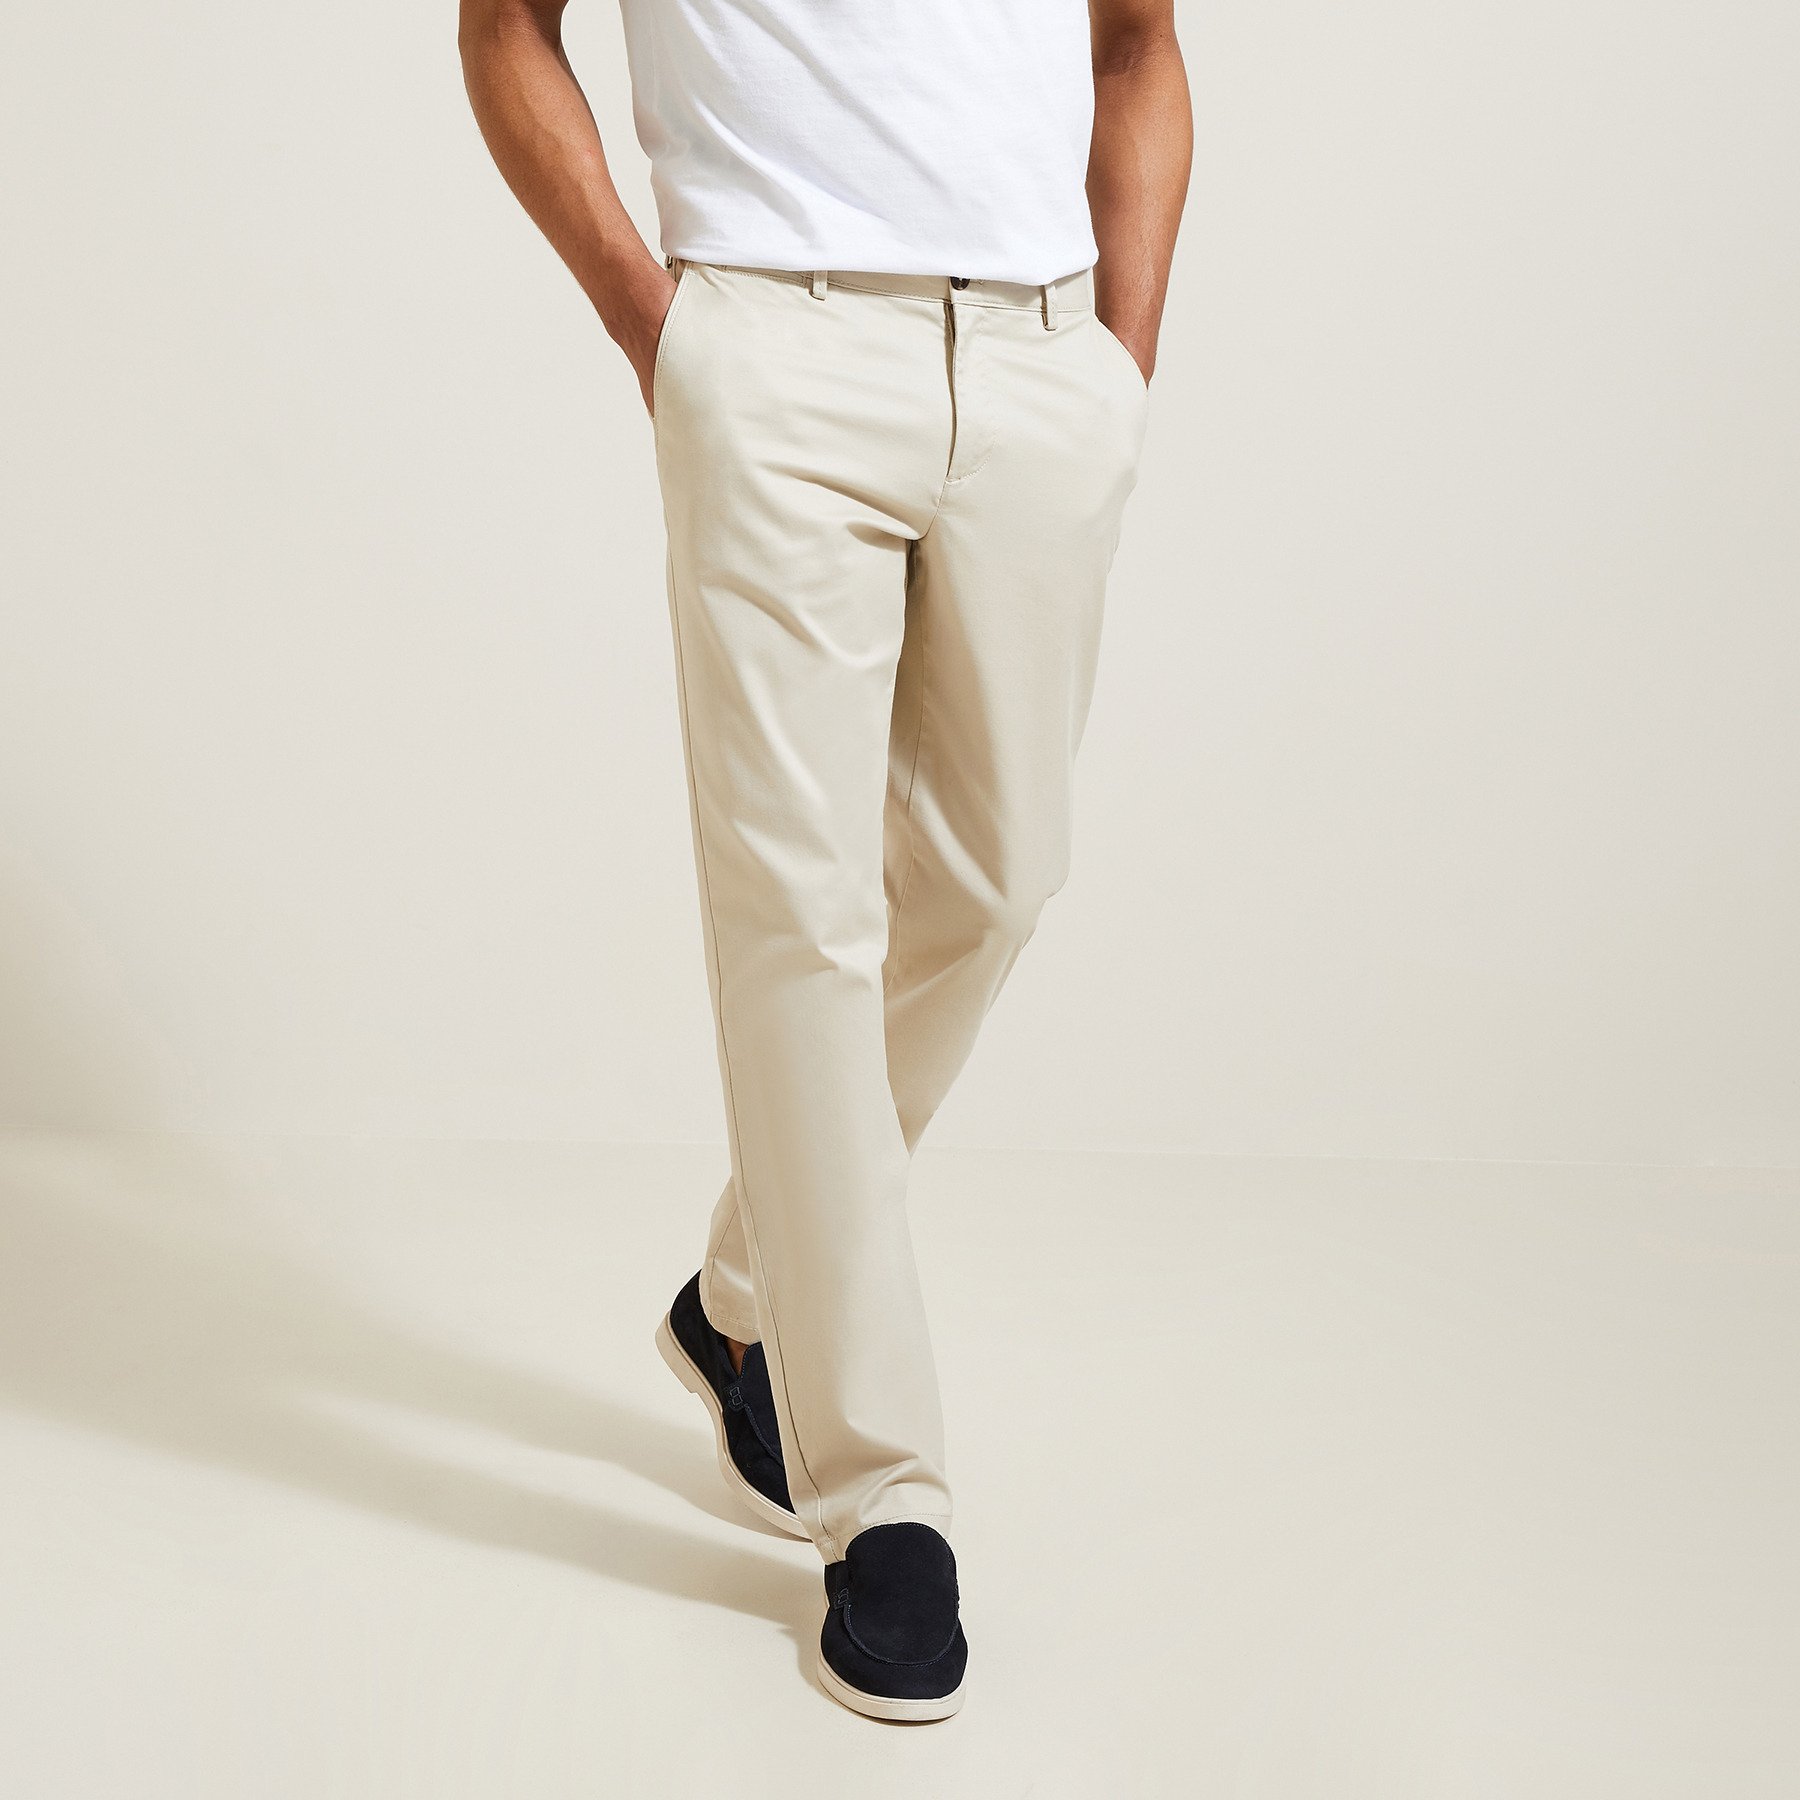 Pantalon chino regular "le parfait by JULES" Ecru 40 98% Coton, 2% Elasthanne Homme